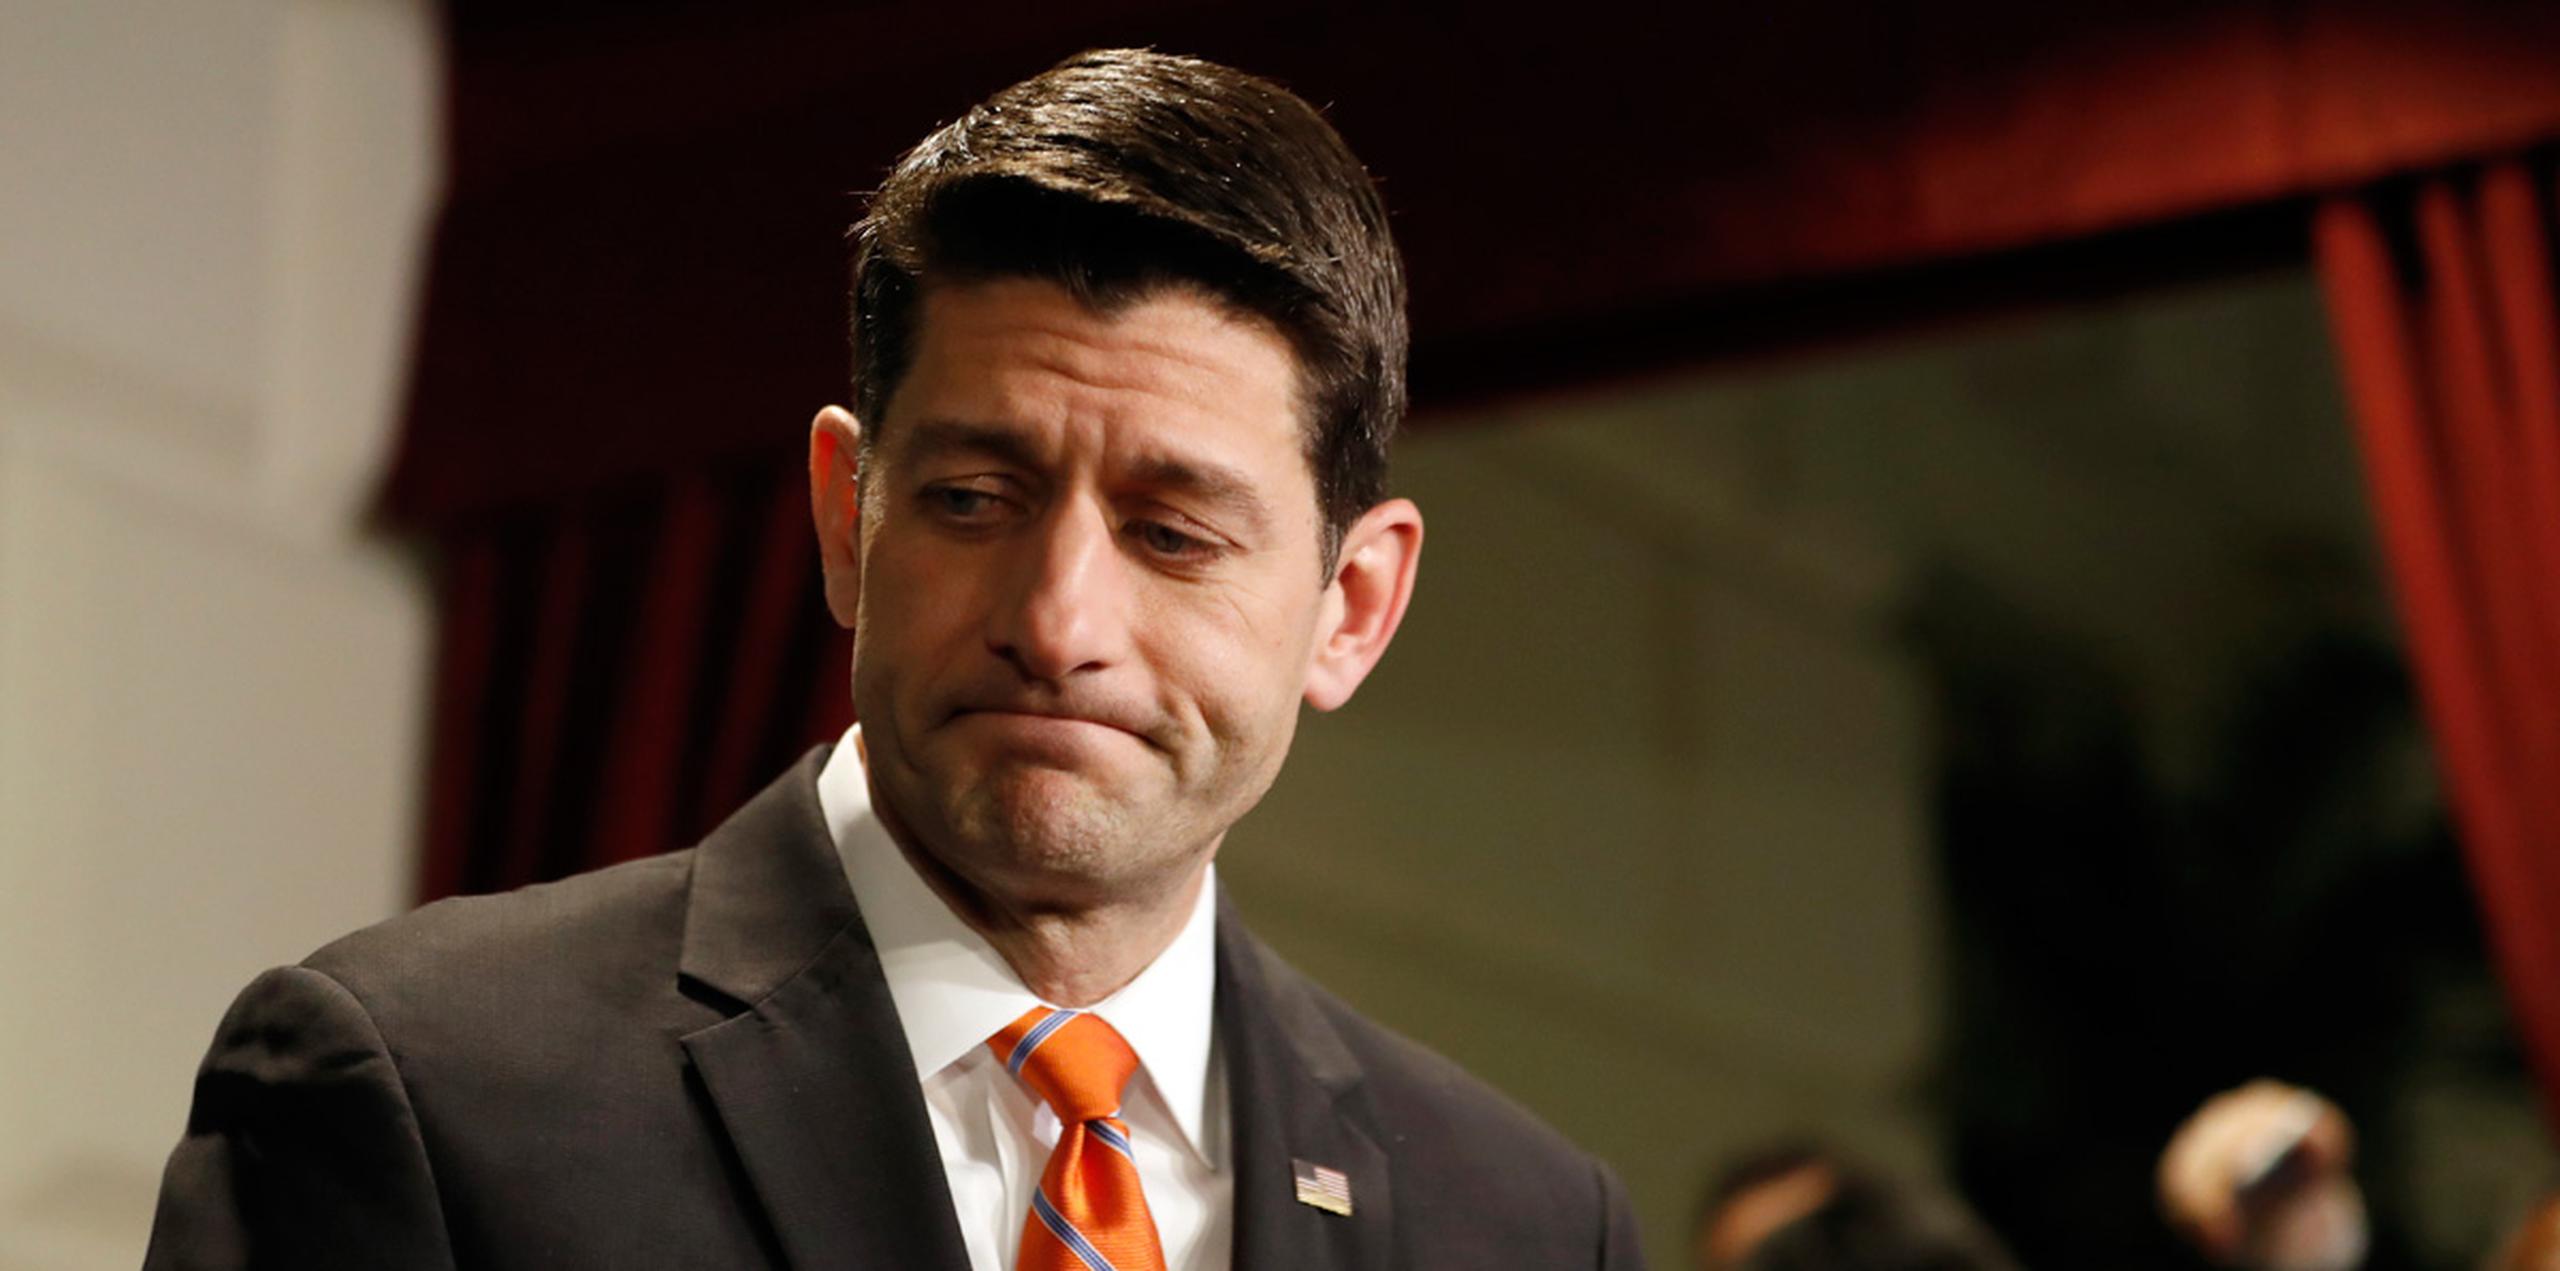 El presidente de la Cámara de Representantes, Paul Ryan, fijó la votación para el viernes. (AP)